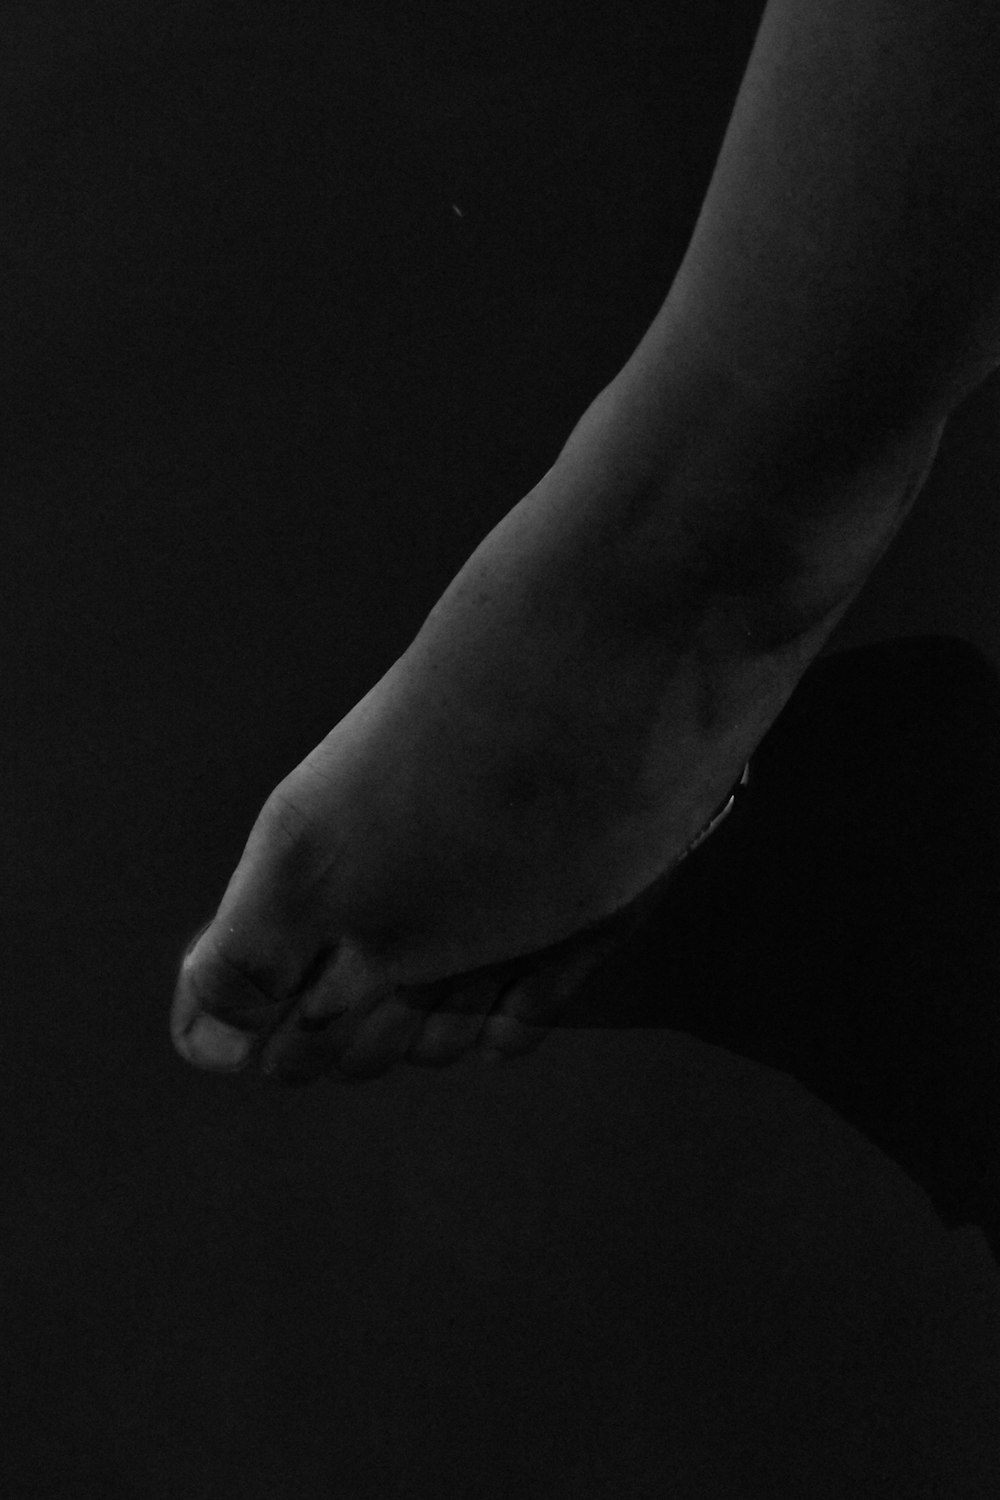 uma foto em preto e branco do pé de uma pessoa